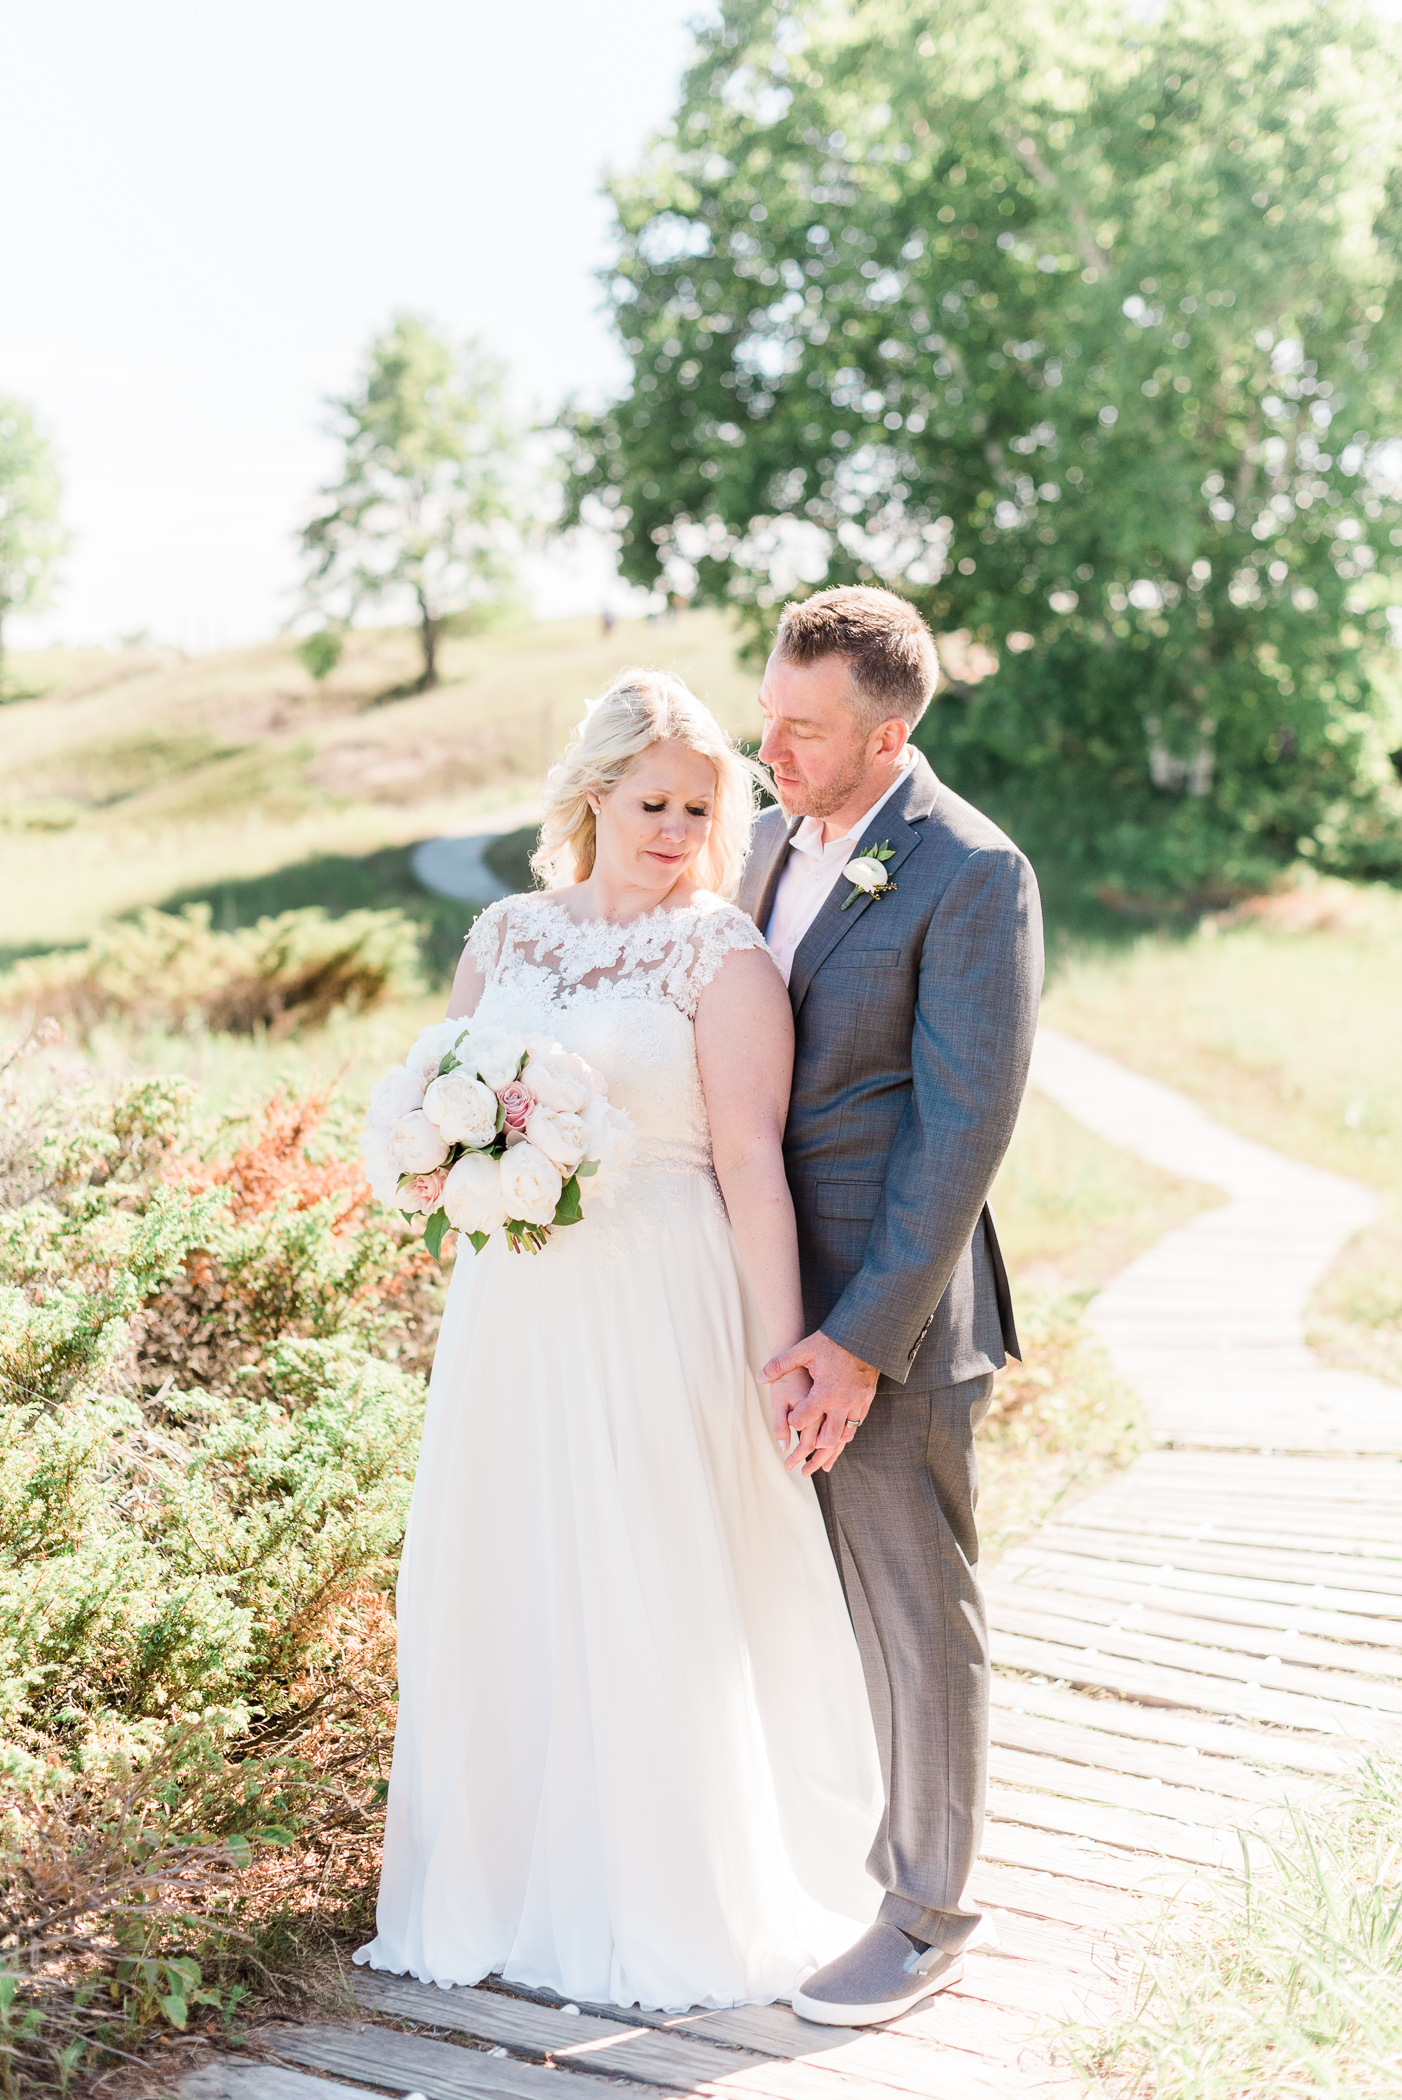 Kohler-Andrae State Park Wedding Photographer - Larissa Marie Photography